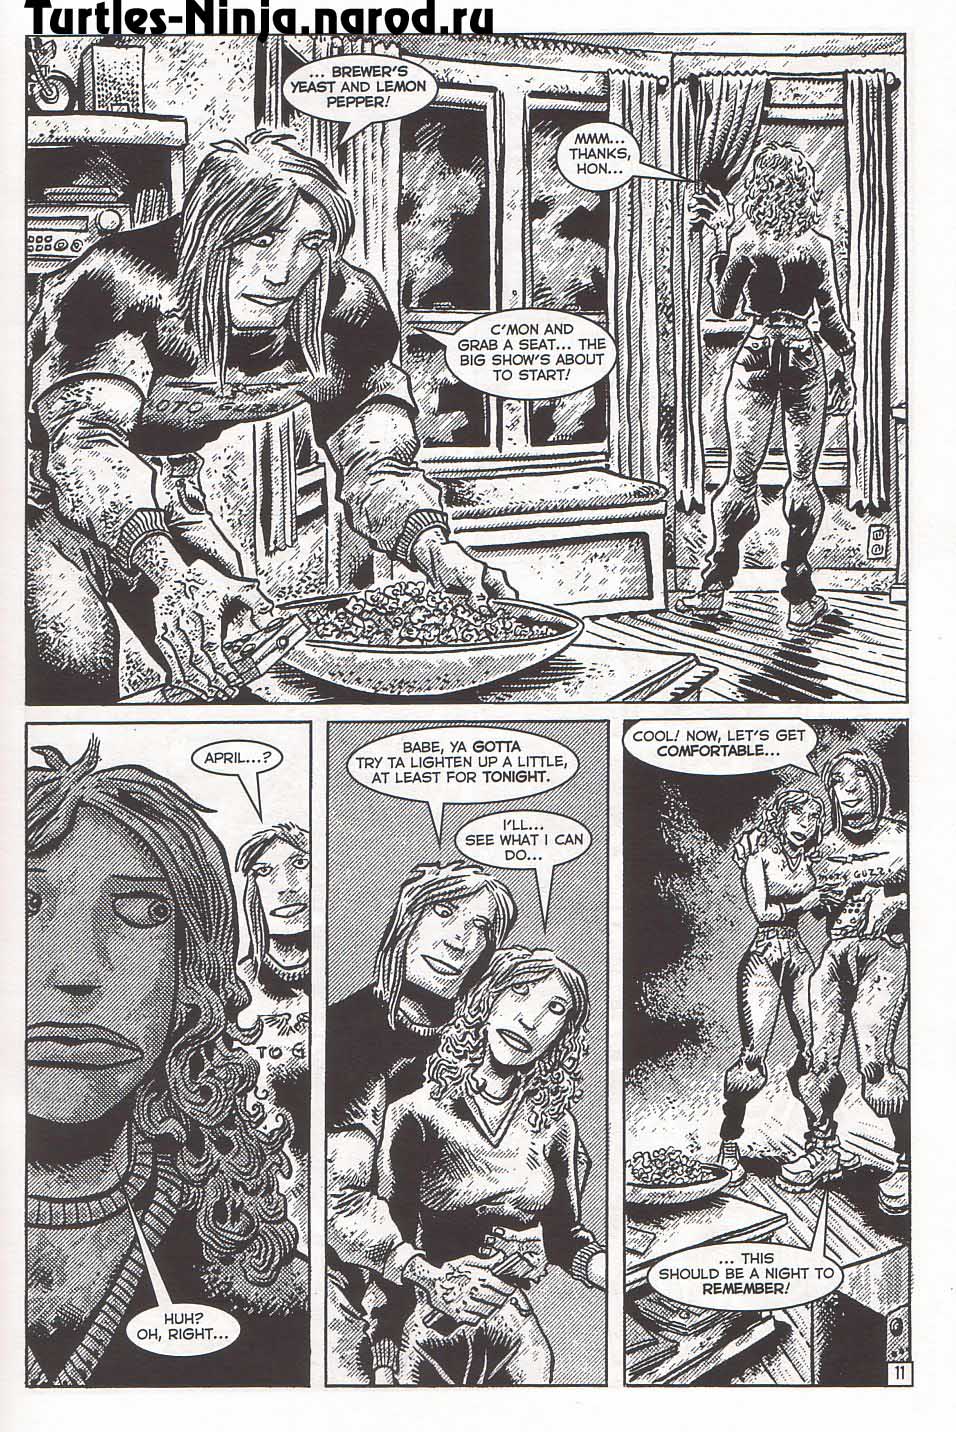 TMNT: Teenage Mutant Ninja Turtles issue 5 - Page 13